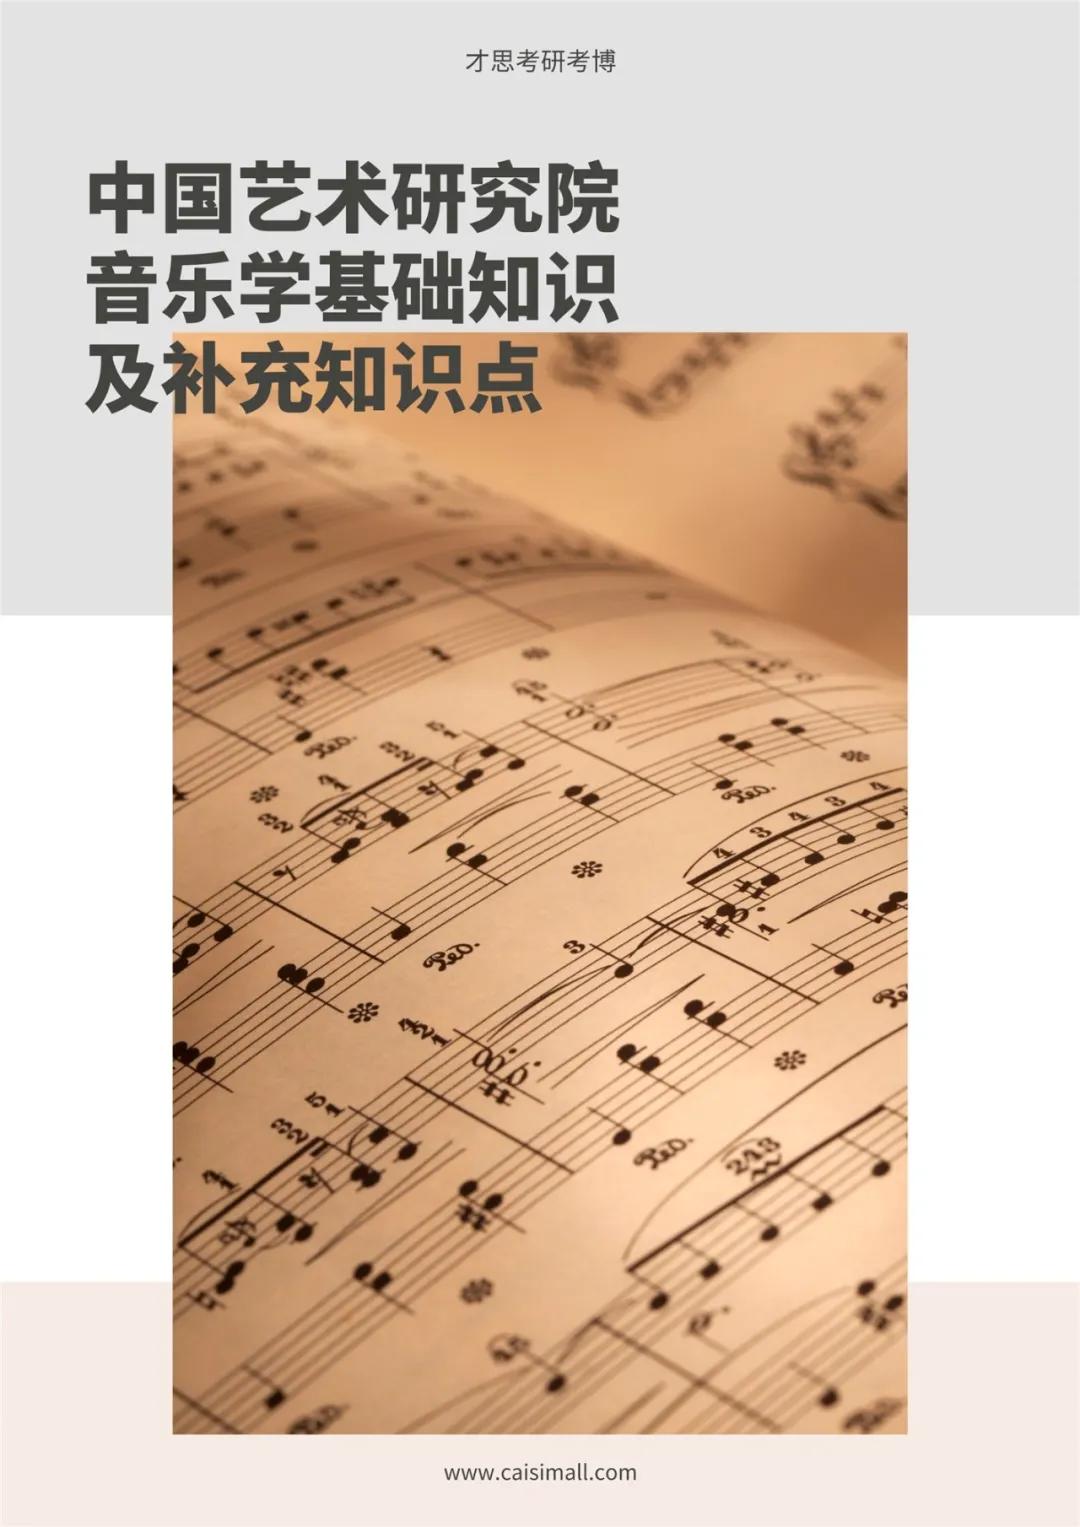 2022年中国艺术研究院音乐学音乐史论考研专题解读